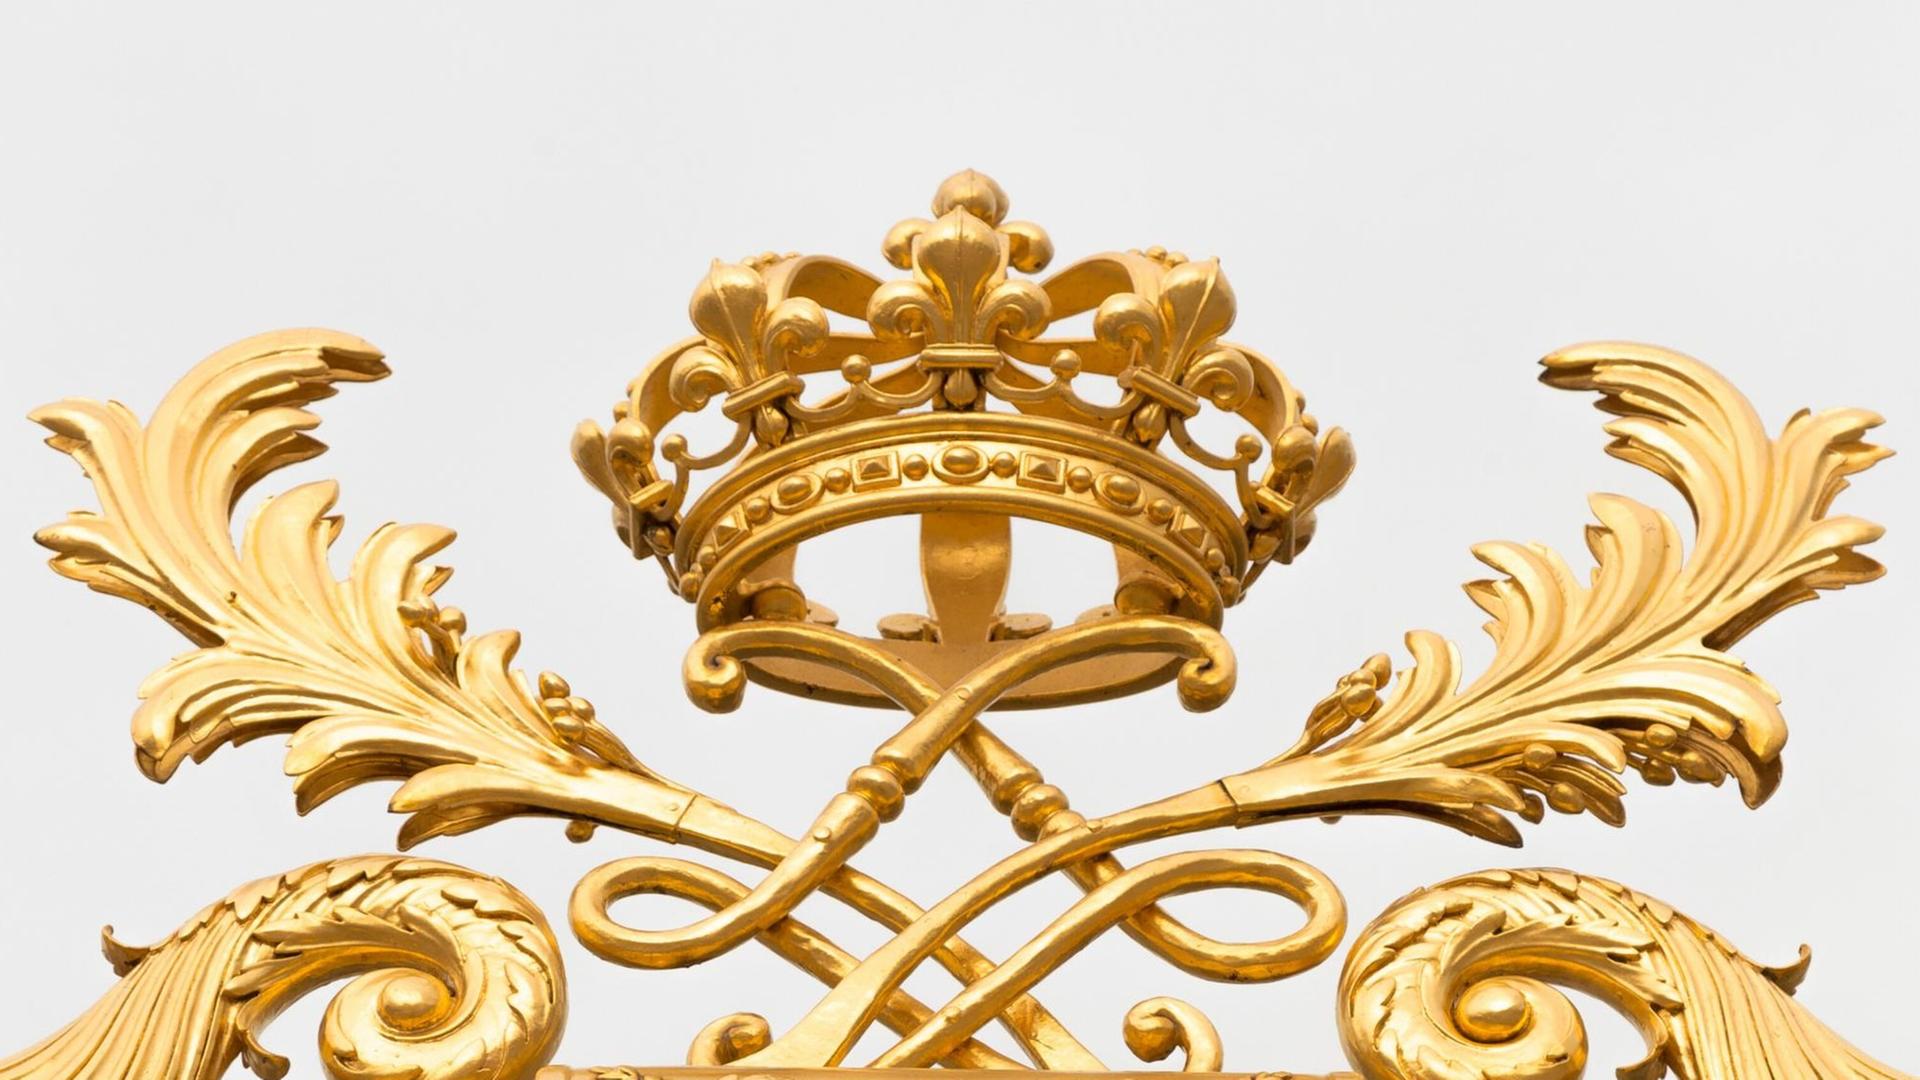 Eine goldene Kronen ist als Schmuck auf einem höfischen Palastzaun angebracht und vor blauem Himmel fotografiert.